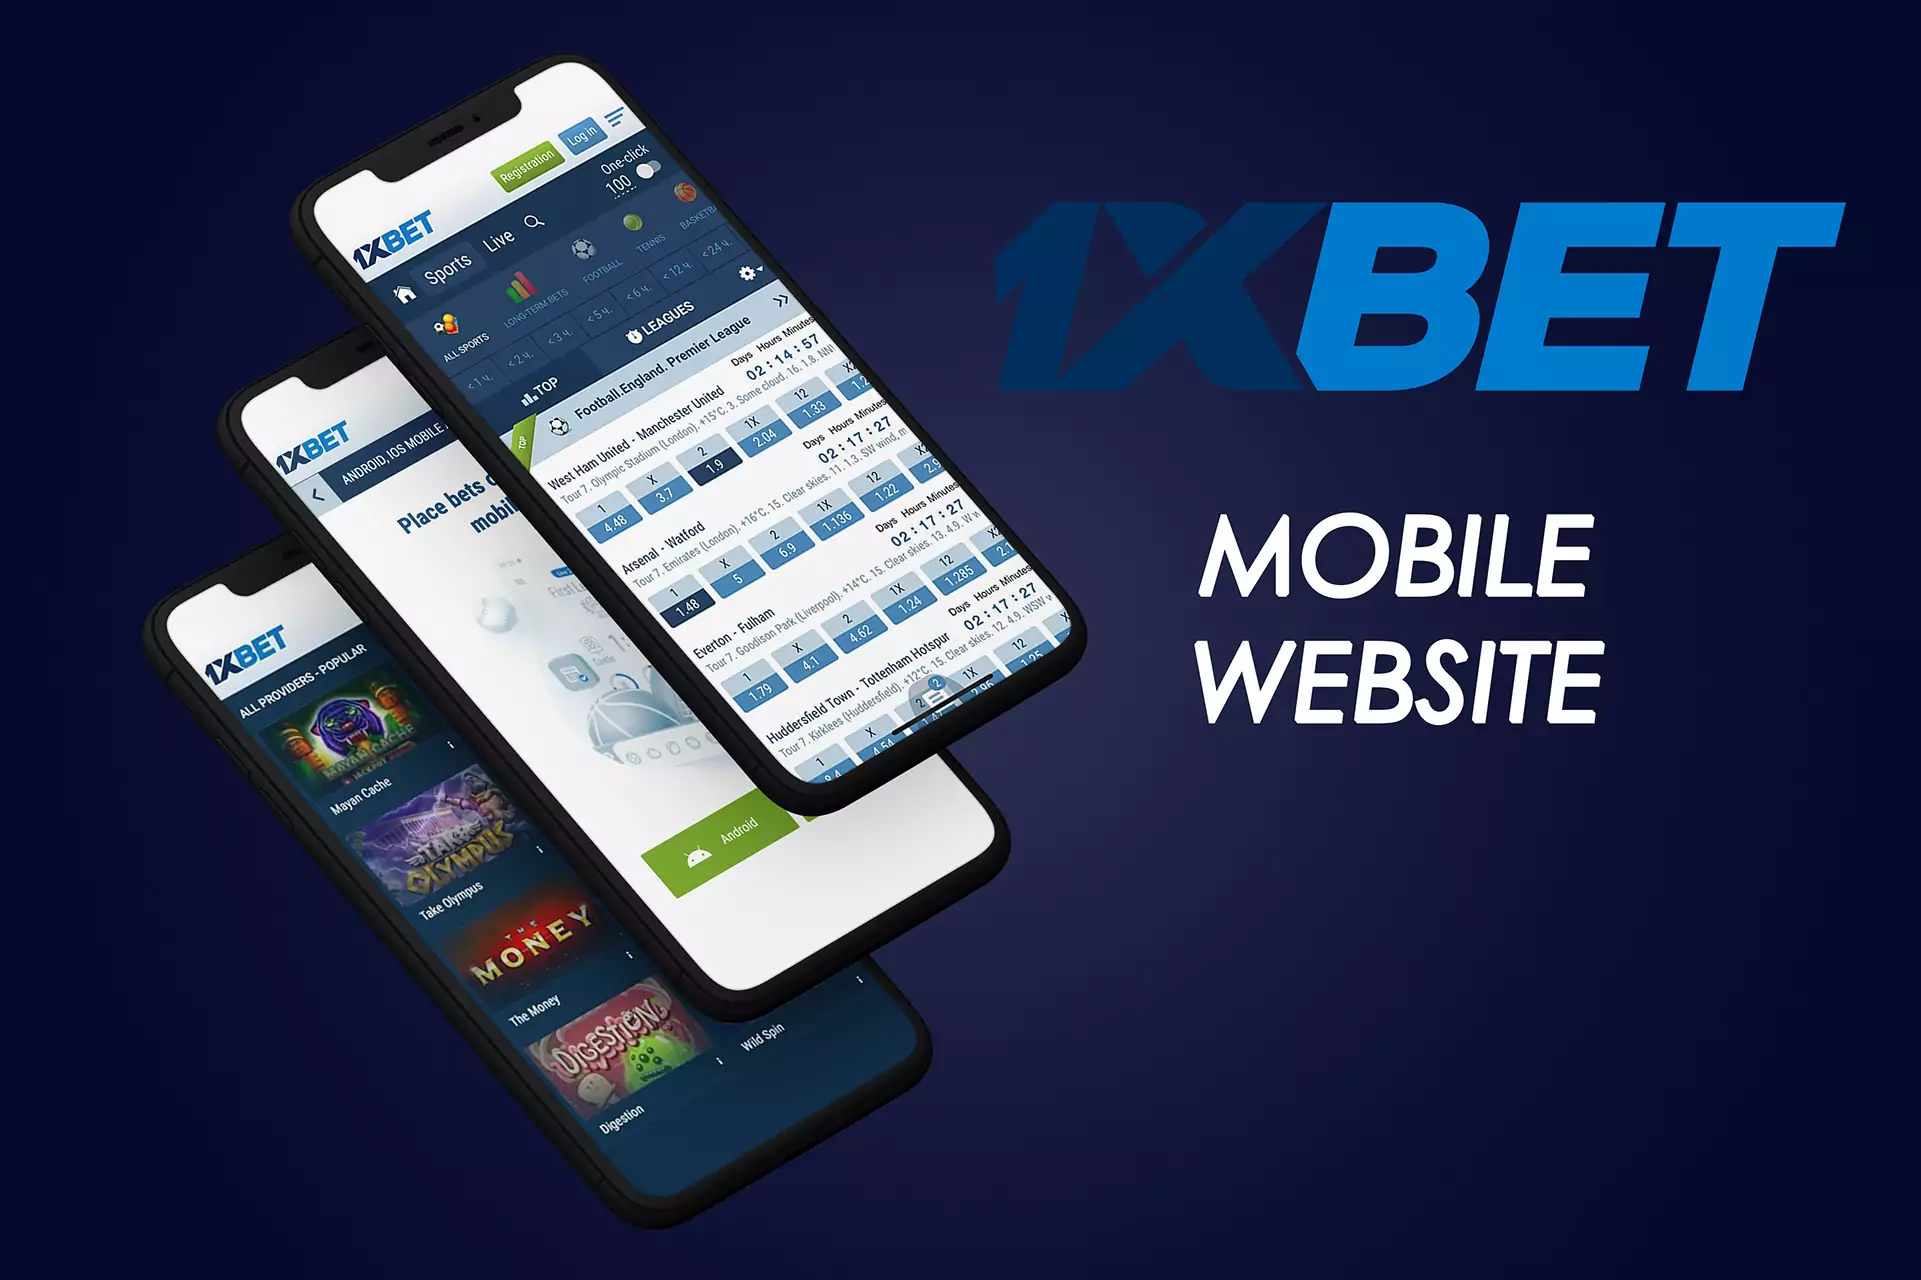 1xBet वेबसाइट के मोबाइल संस्करण की कार्यक्षमता मोबाइल ऐप से अलग नहीं है।